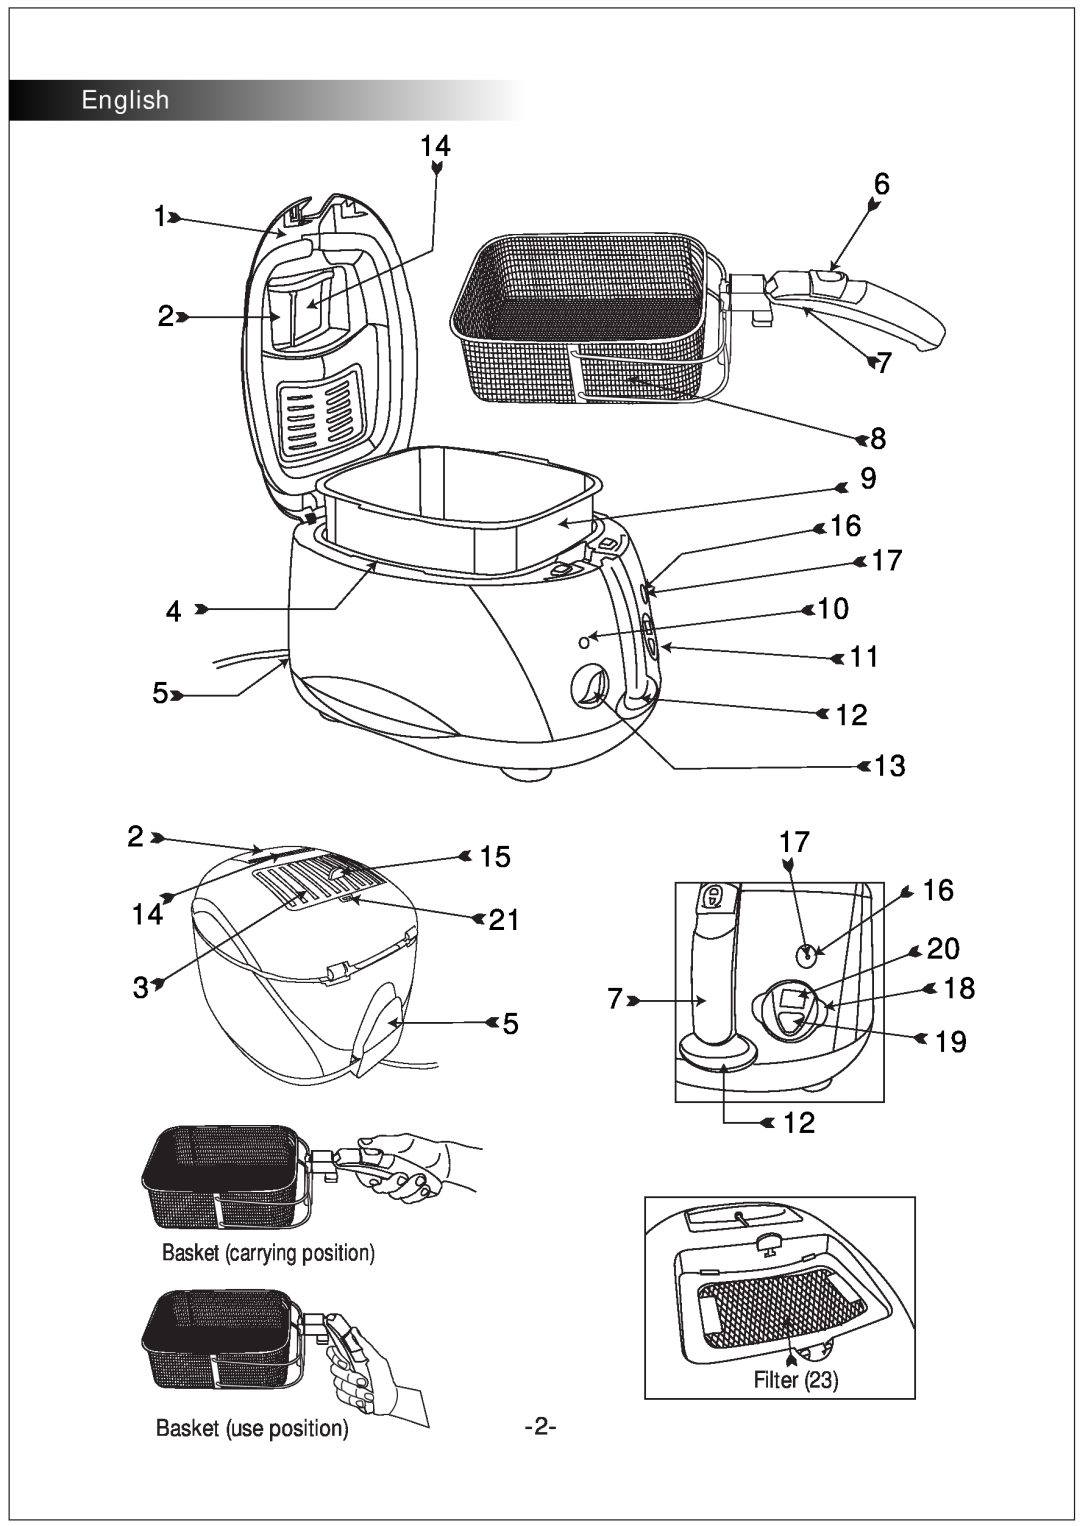 Black & Decker EF45 manual English, Basket carrying position, Basket use position, Filter 